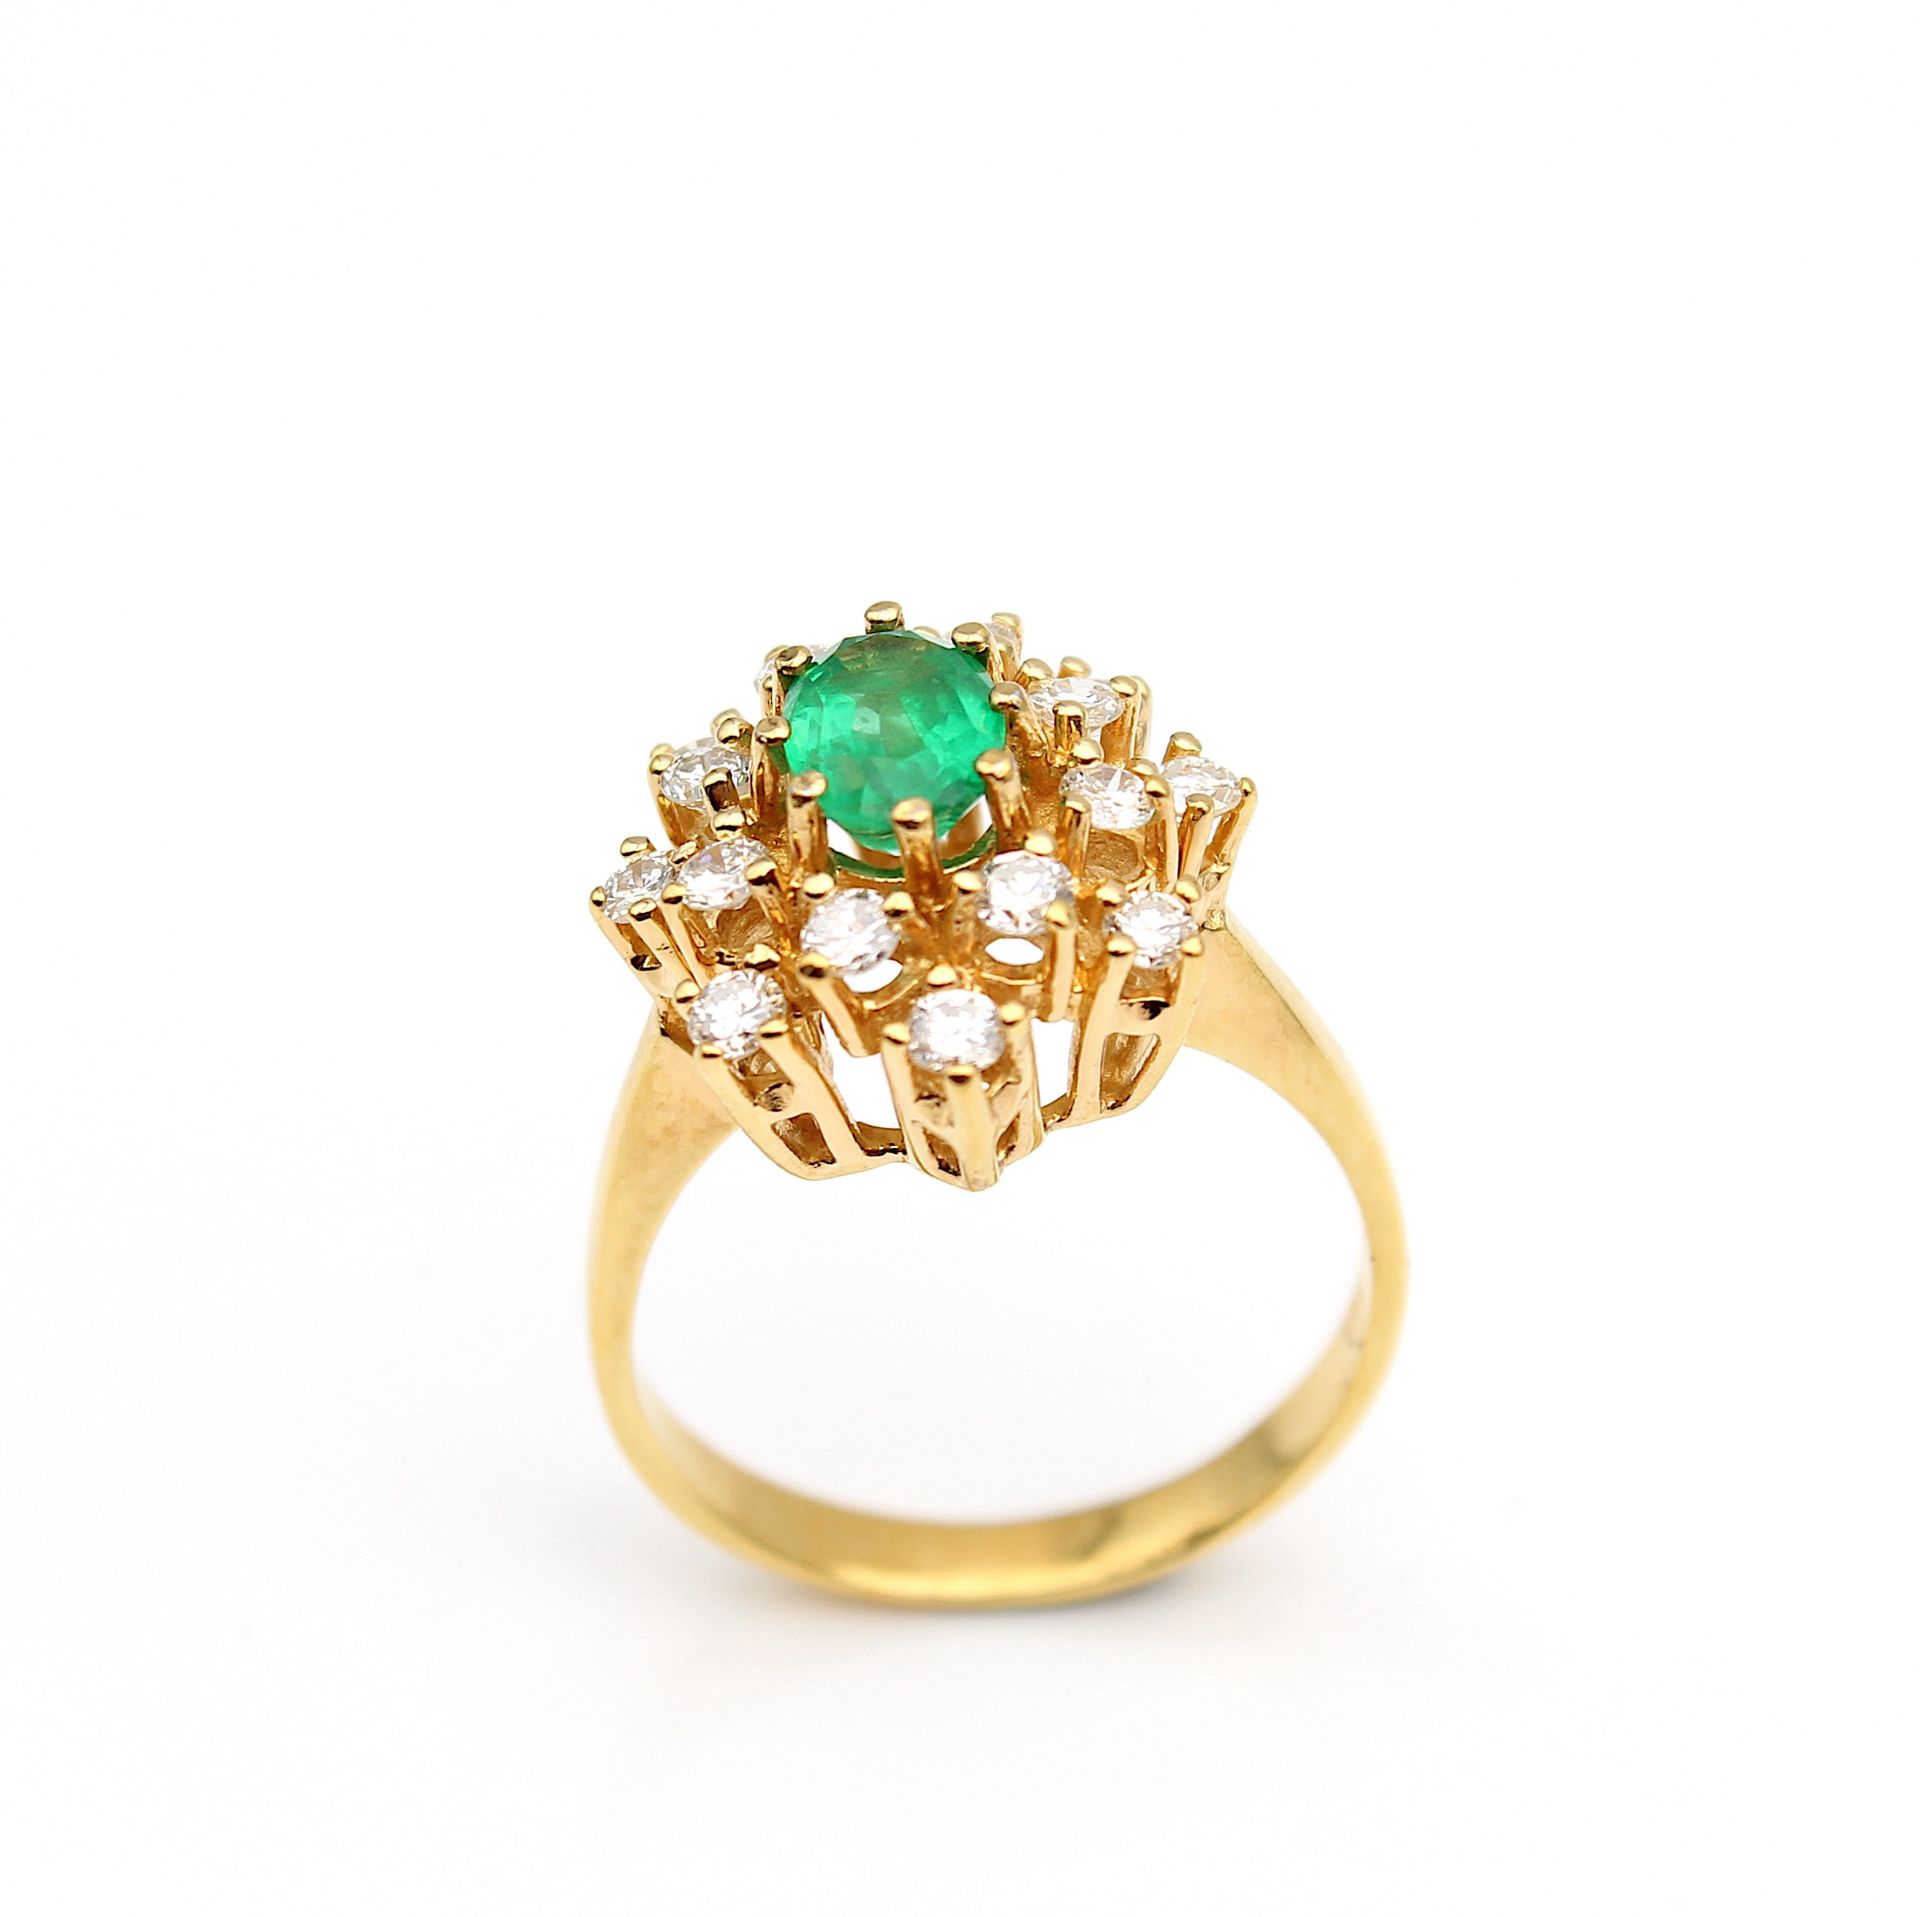 Ring im Juwelenstil mit Smaragd und Brillanten